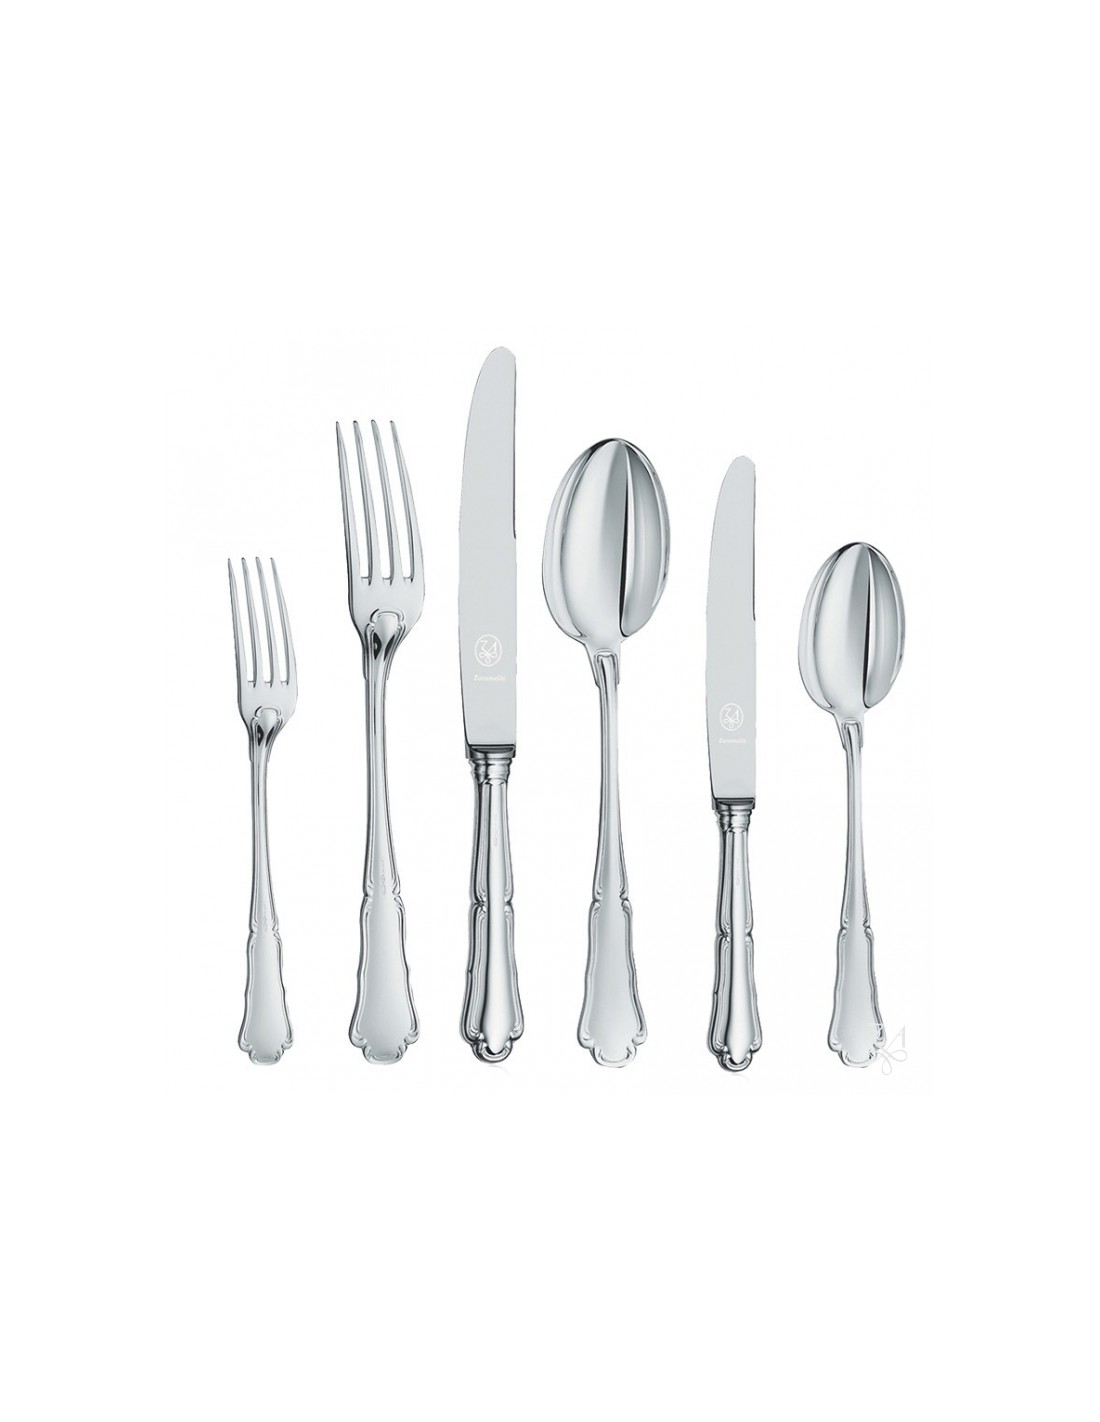 Silver spoons barocco argento plastica posate 96 pcs-48 forchette 24 cucchiai e 24 coltelli. 